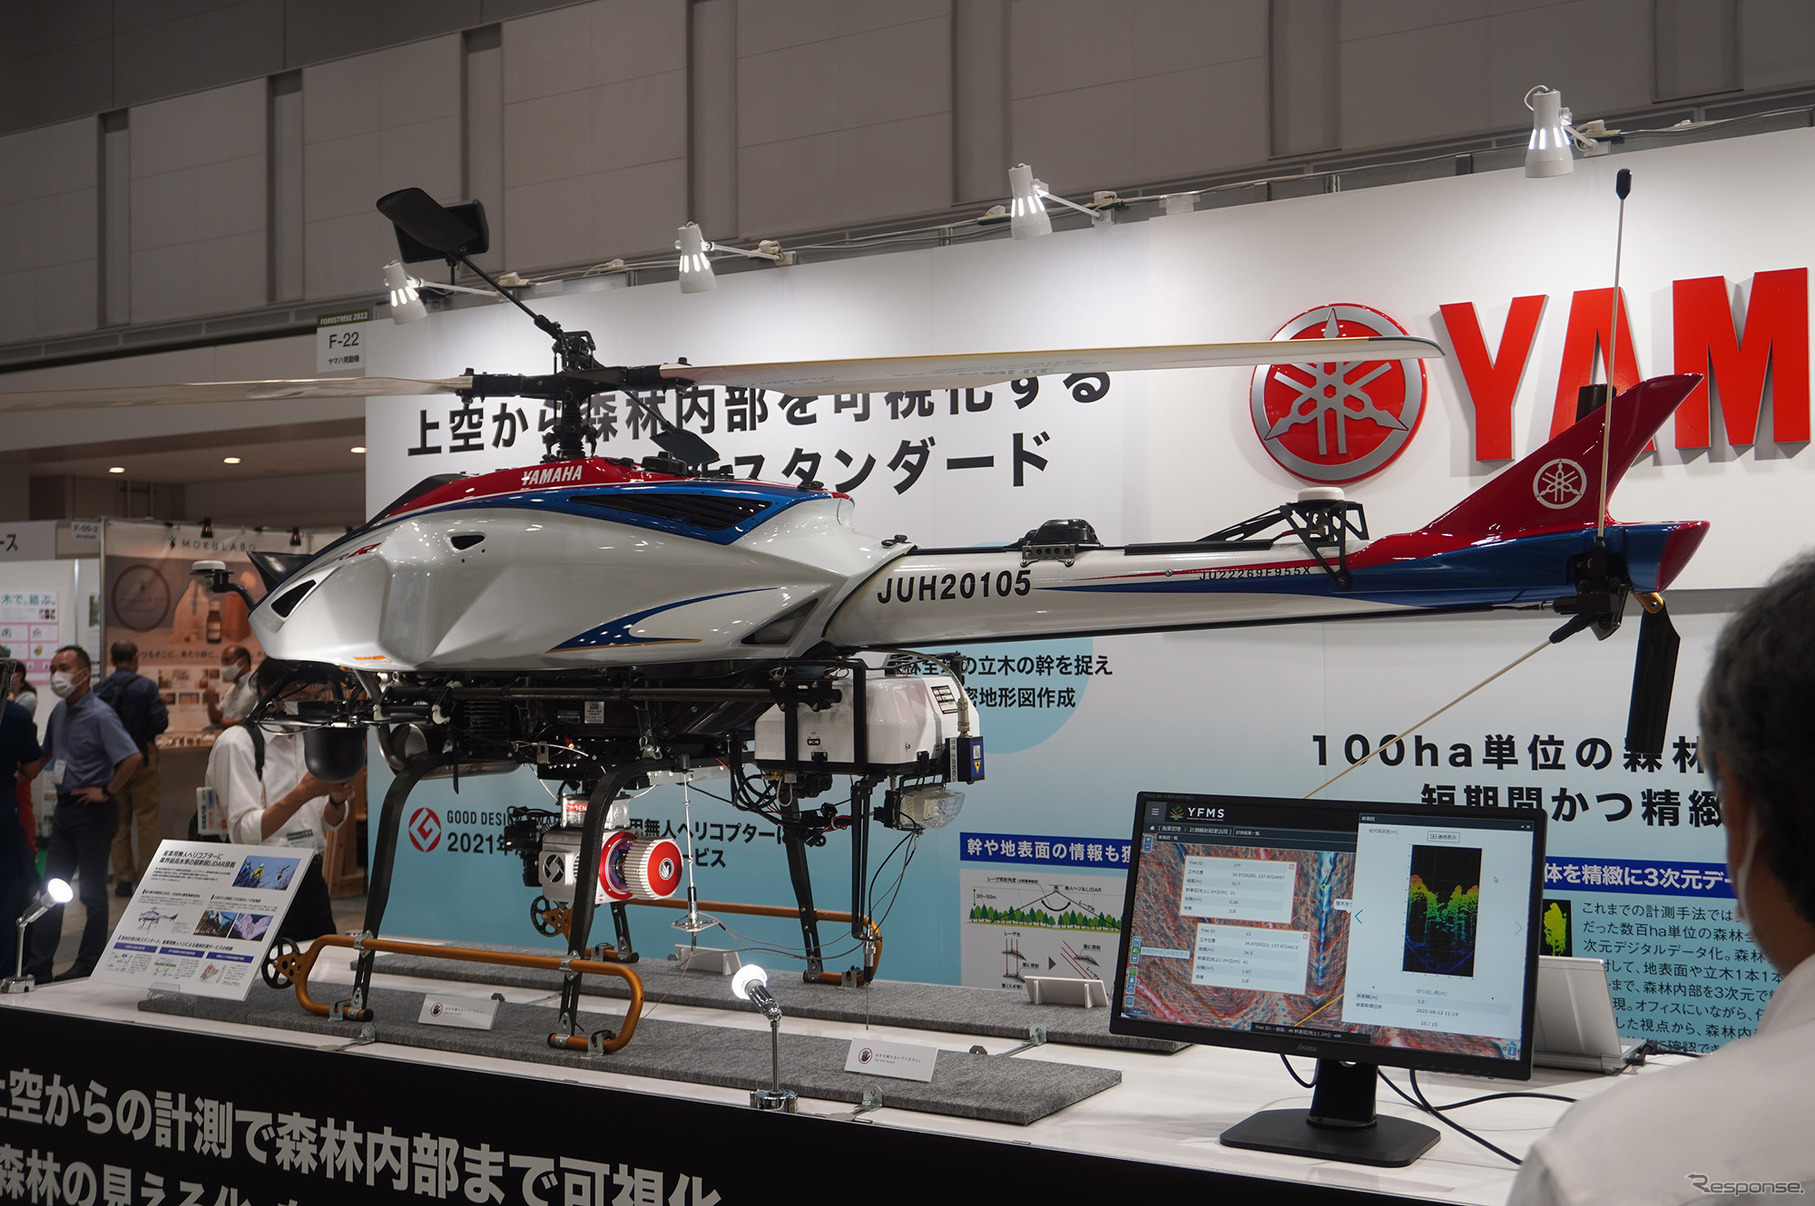 高解像度LiDARを搭載し森林計測をおこなう、ヤマハ発動機の無人ヘリコプター